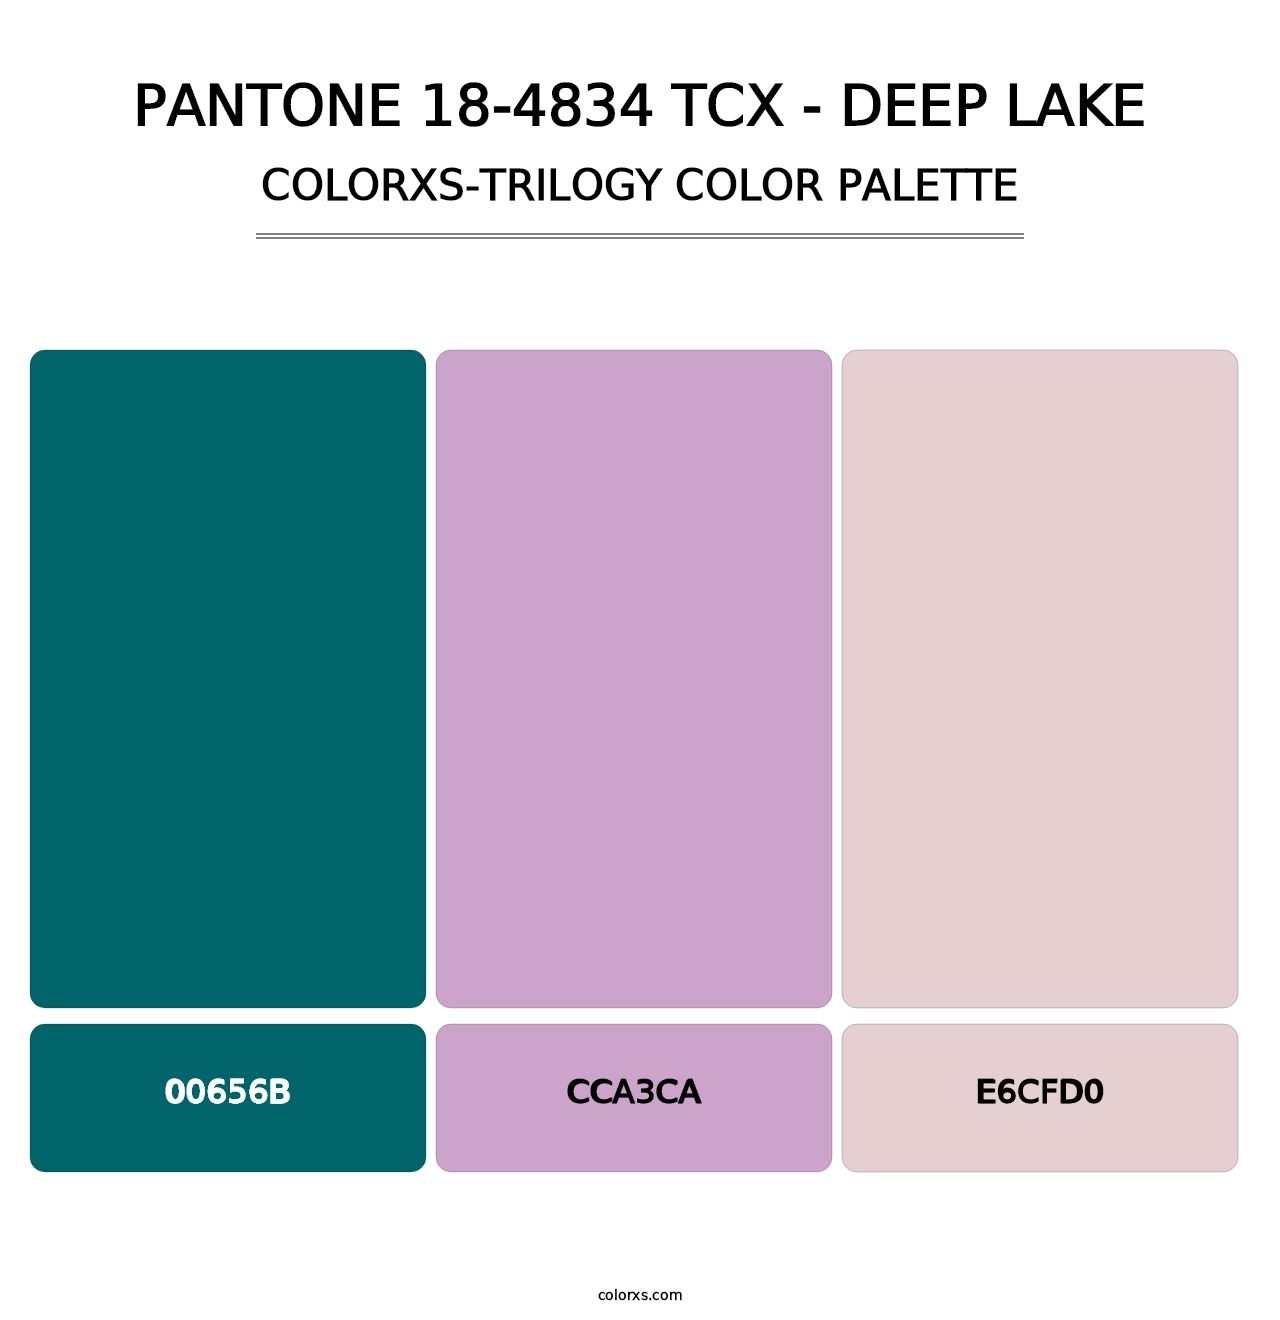 PANTONE 18-4834 TCX - Deep Lake - Colorxs Trilogy Palette